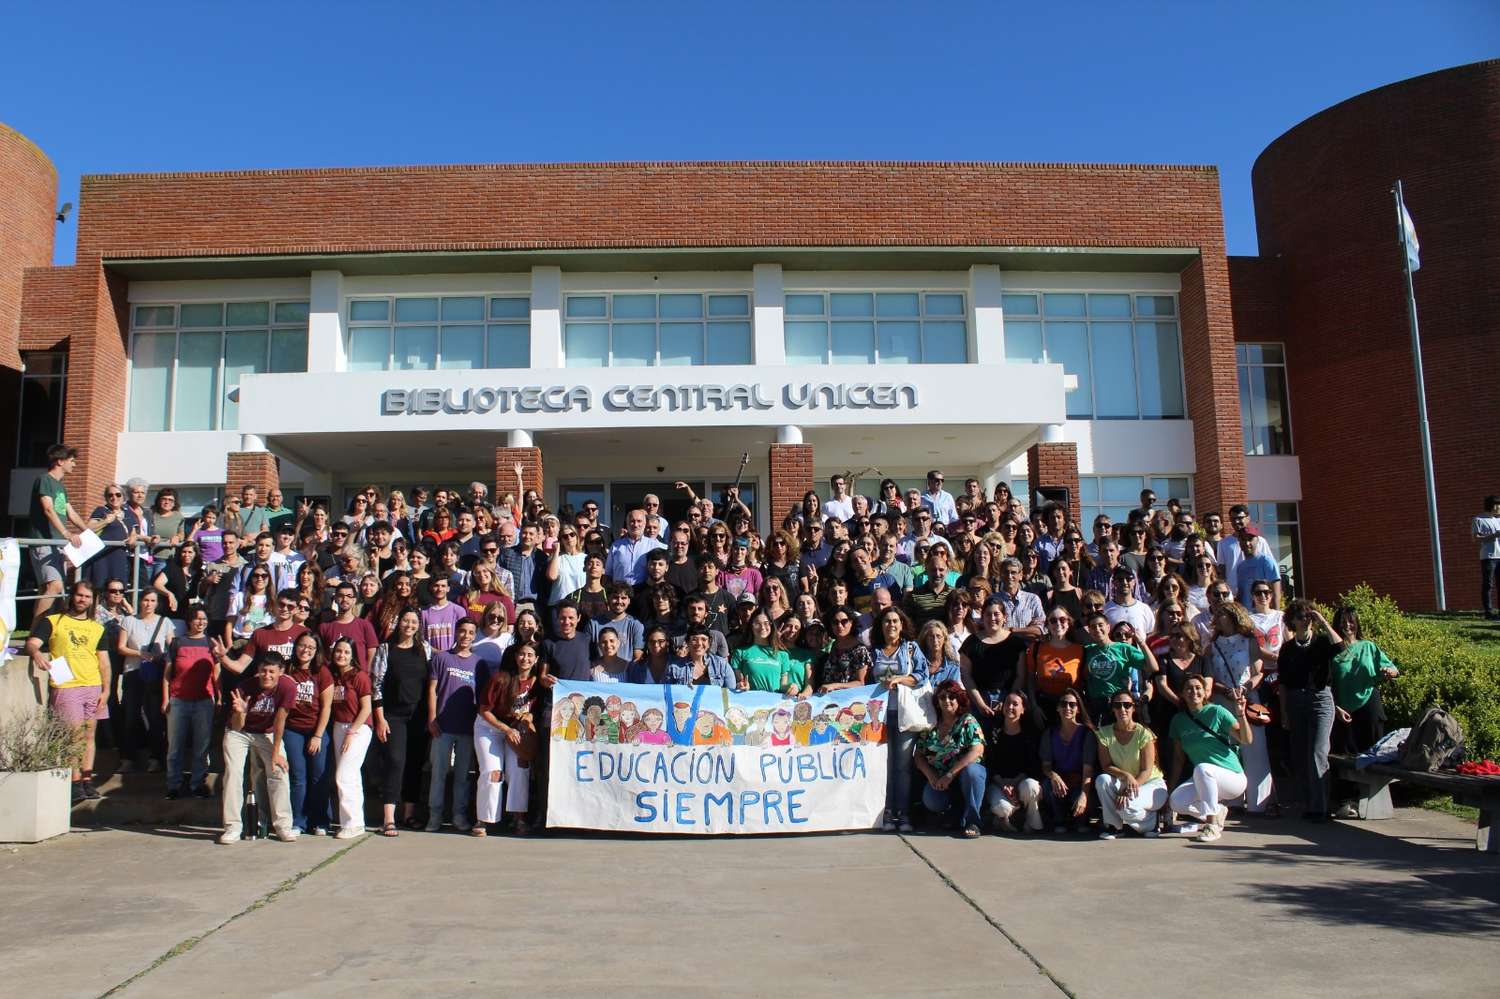 Bajo el hashtag #UniversidadGratuita, la jornada reunió a estudiantes, graduados, investigadores, docentes, no docentes y a la comunidad educativa en general